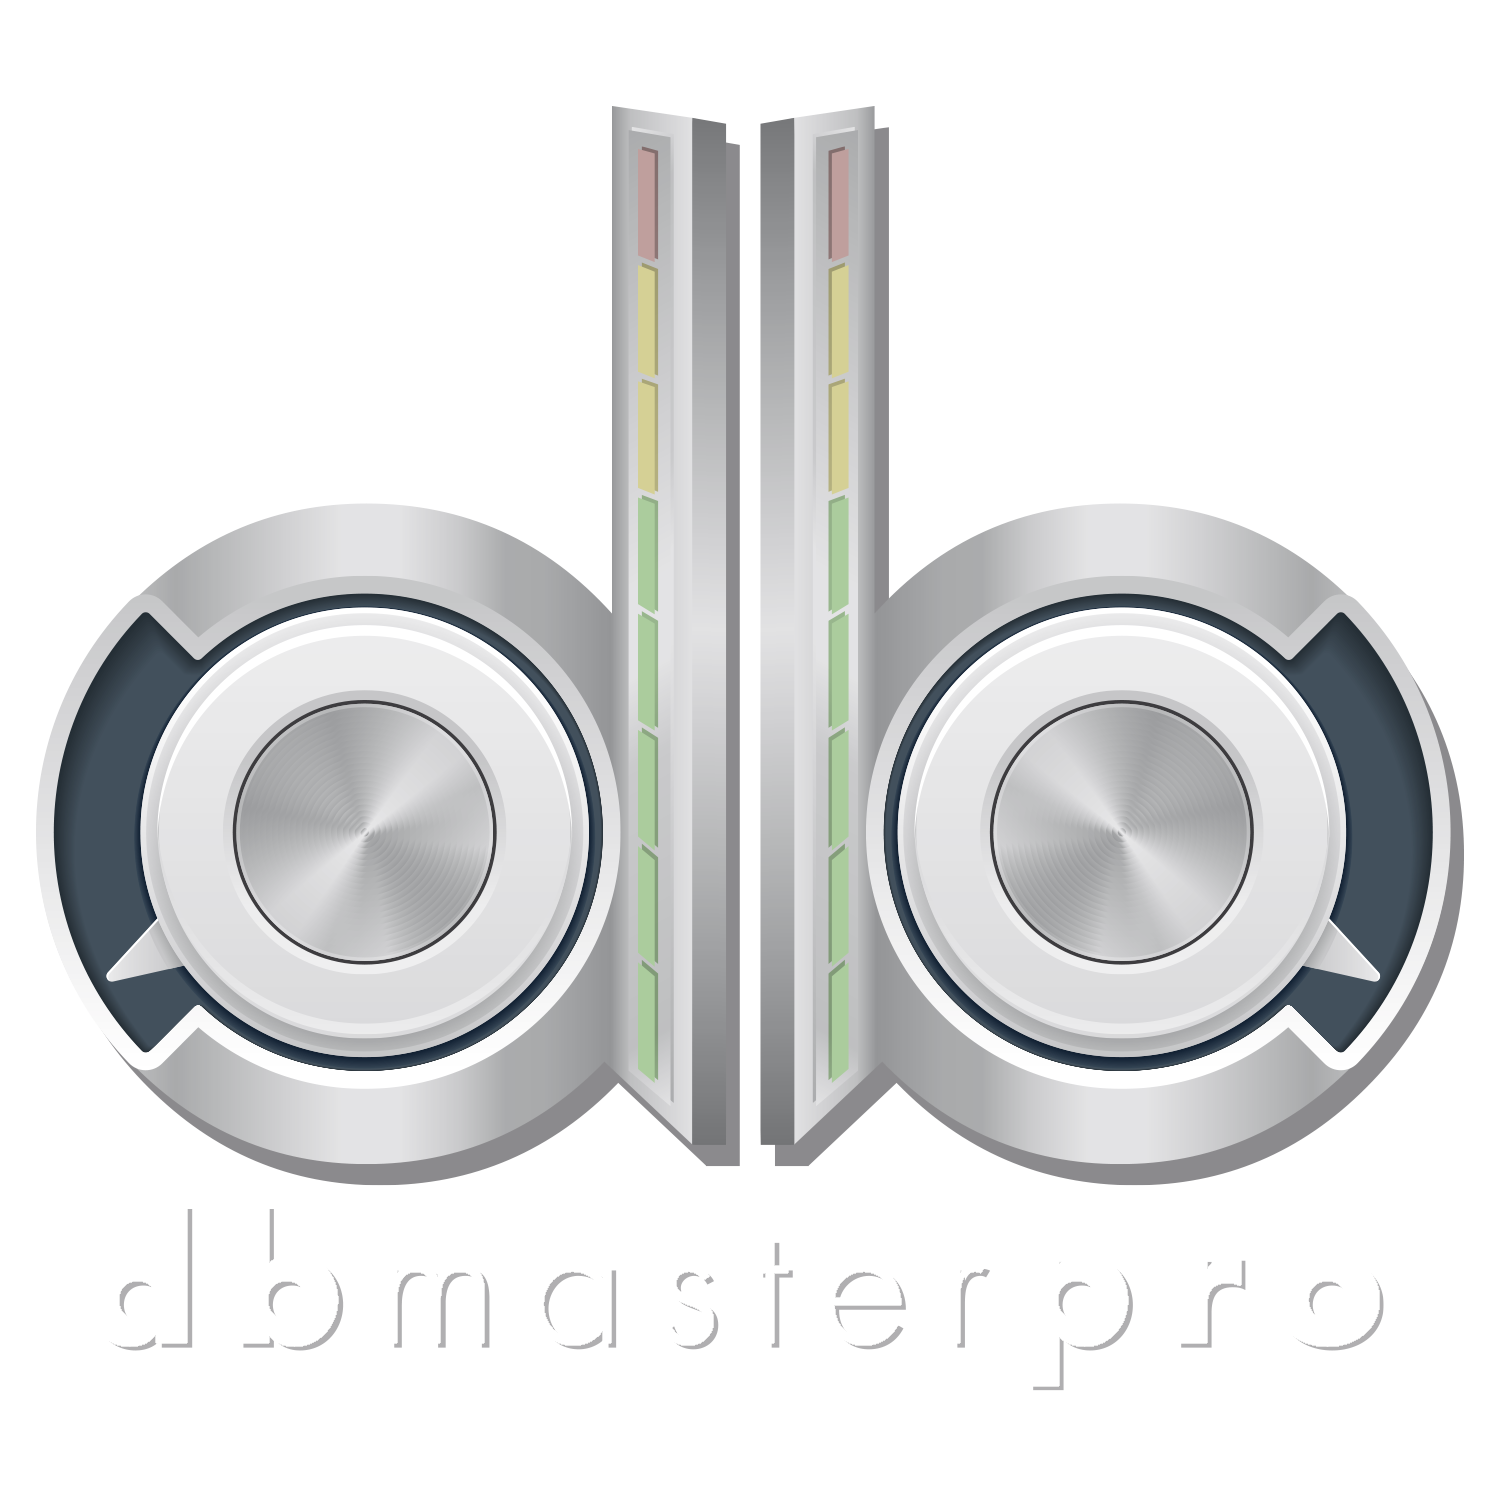 db Master pro mastering studio